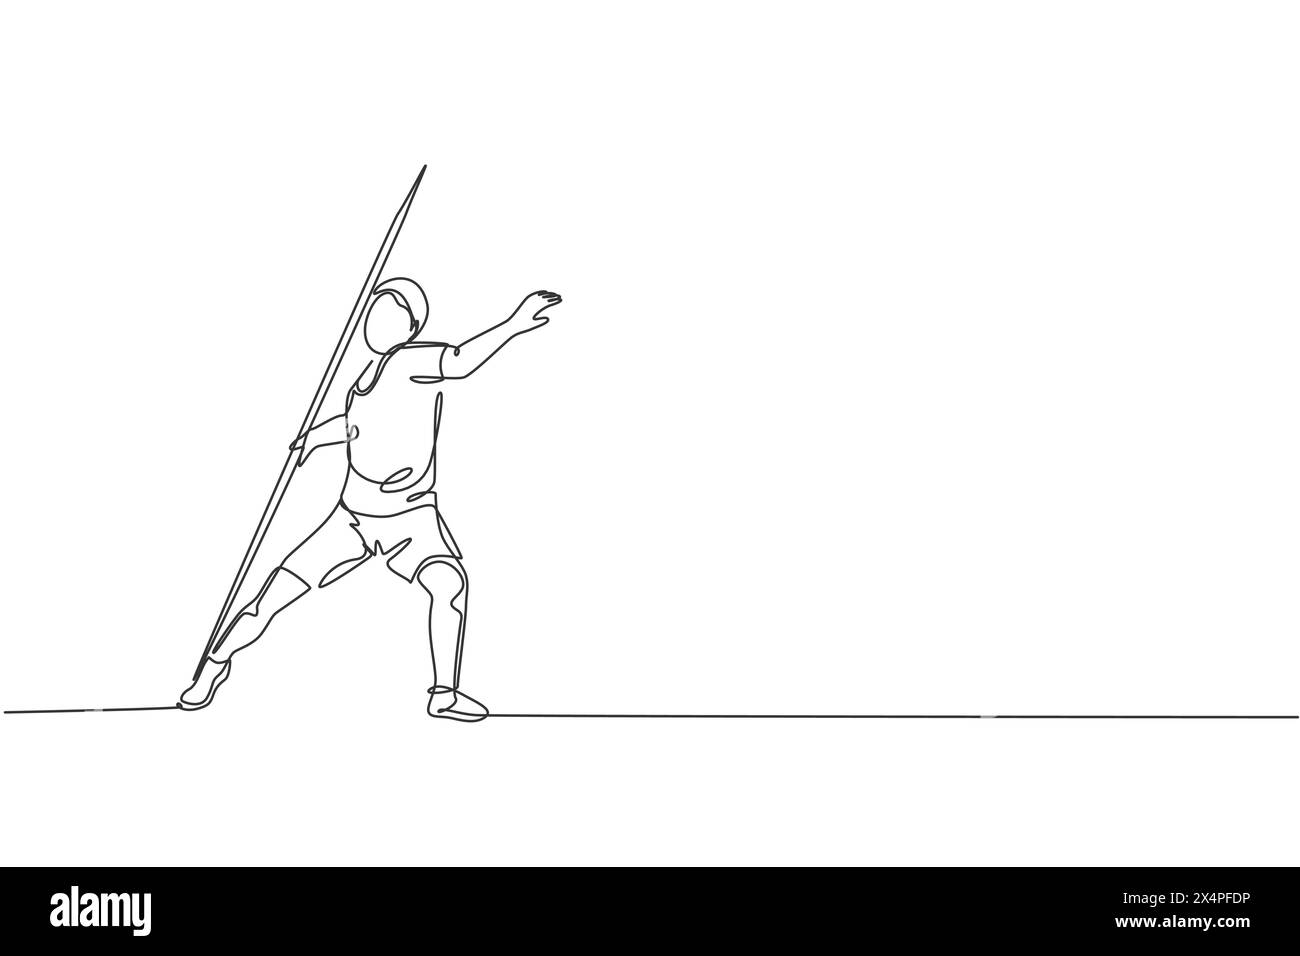 Eine einzelne Linienzeichnung der jungen energetischen Mann Übung Werfen Speer mit der ganzen Kraft Vektor-Illustration Grafik. Gesunder Lebensstil athletischer spor Stock Vektor